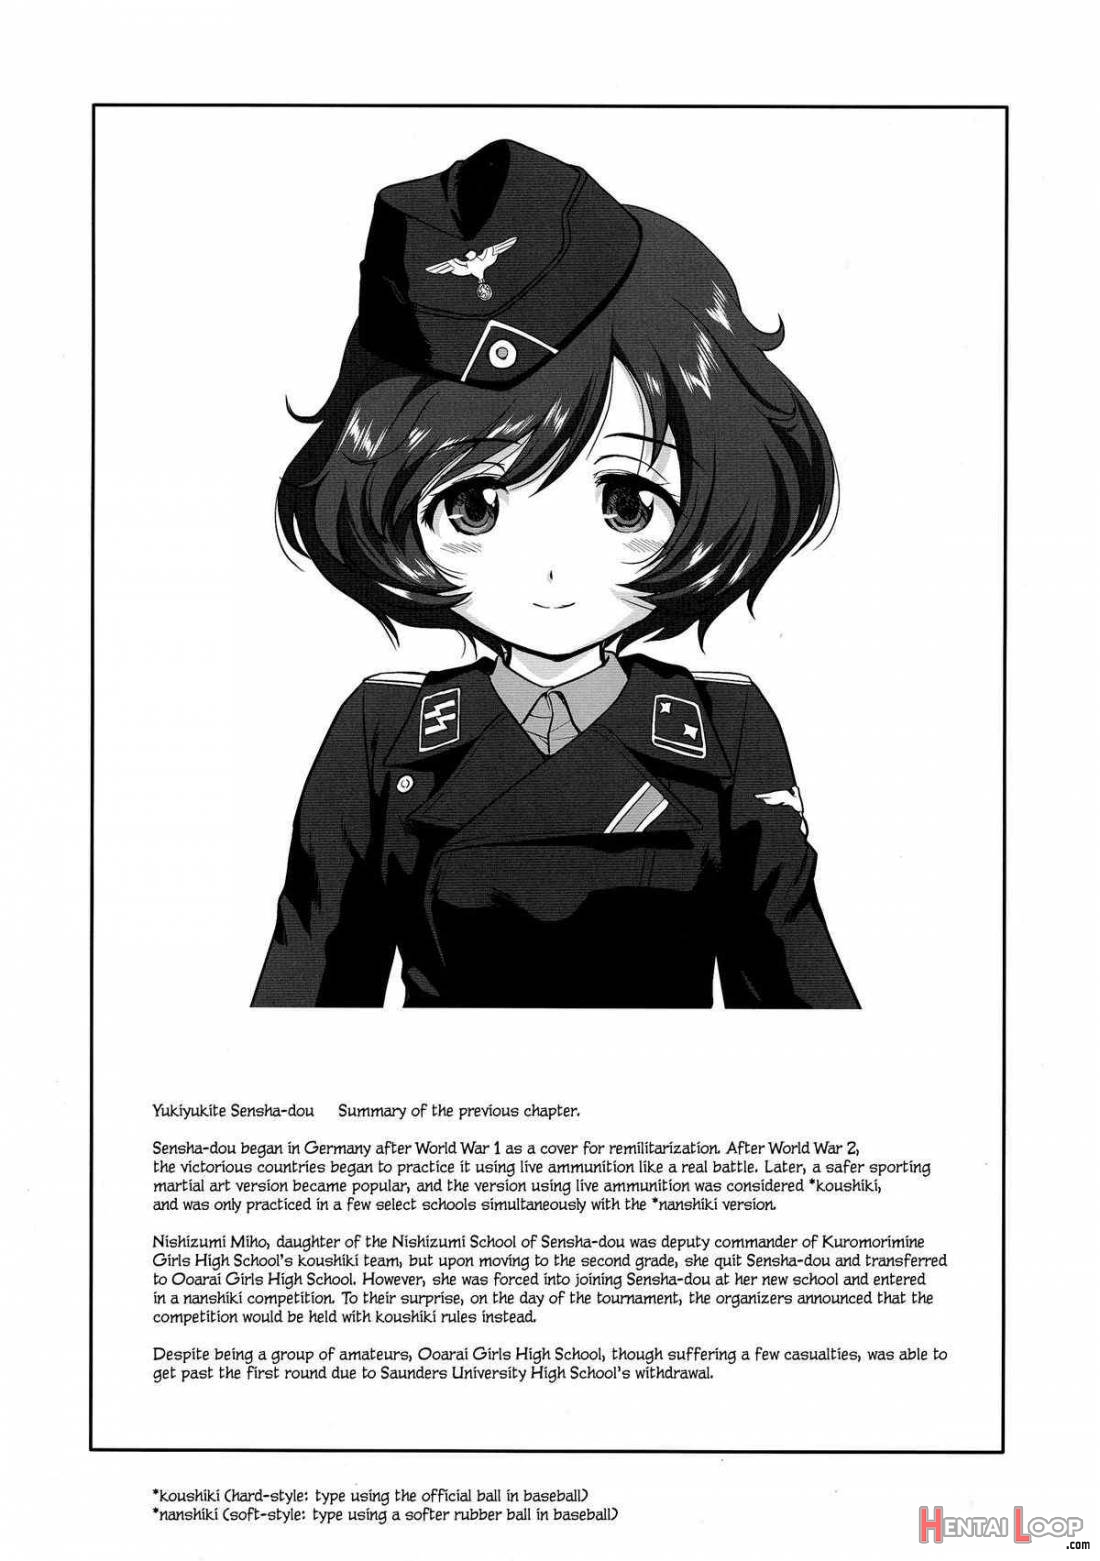 Yukiyukite Senshadou Battle of Pravda page 3